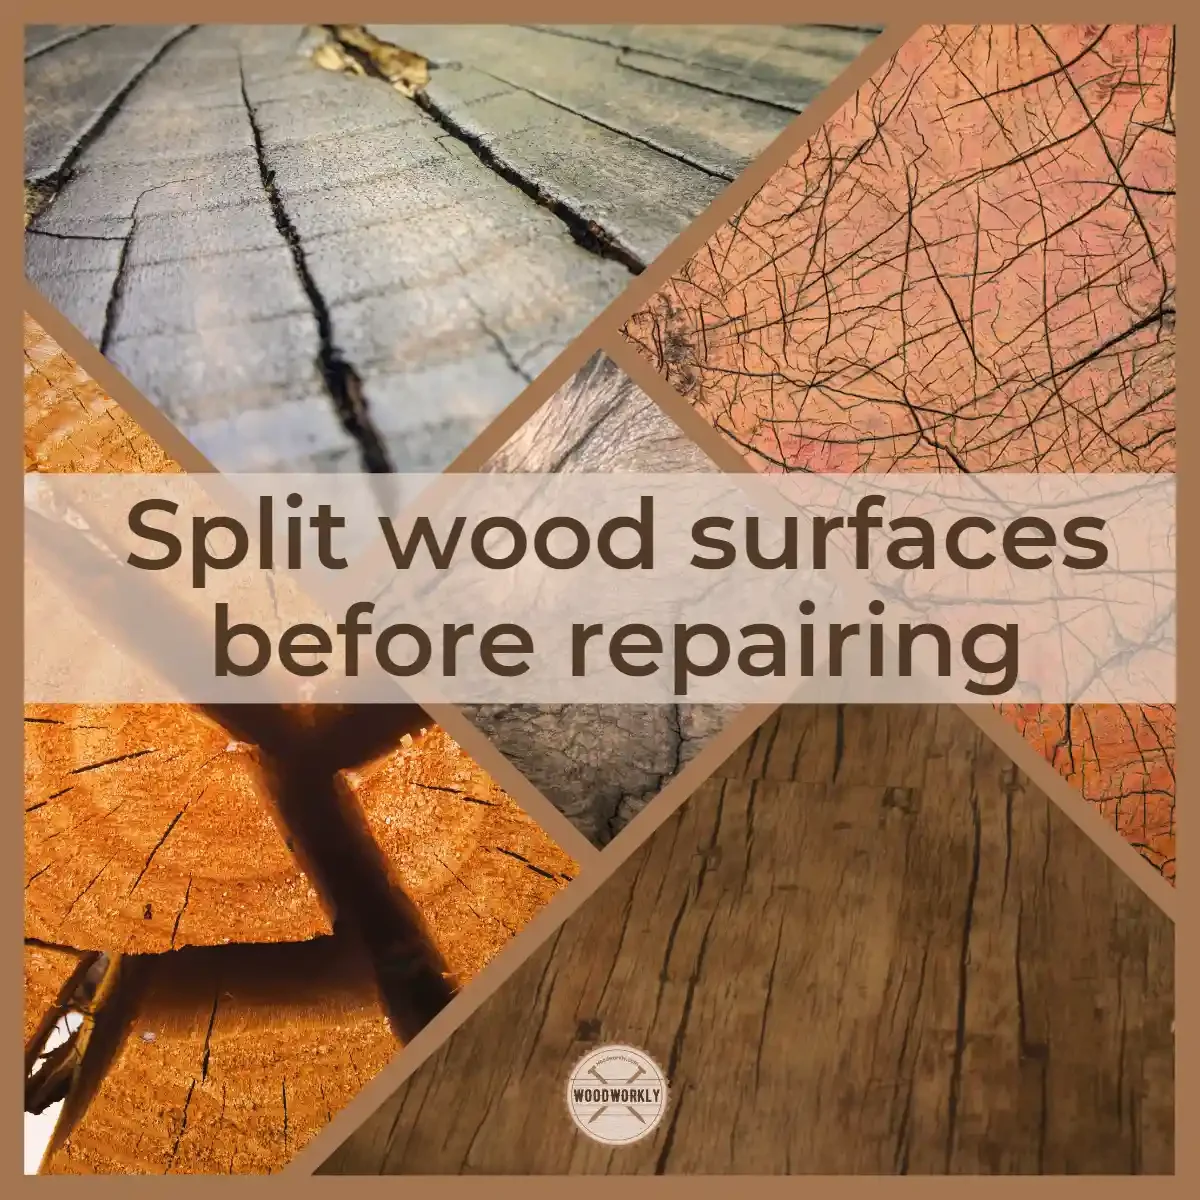 Split wood surfaces before repairing